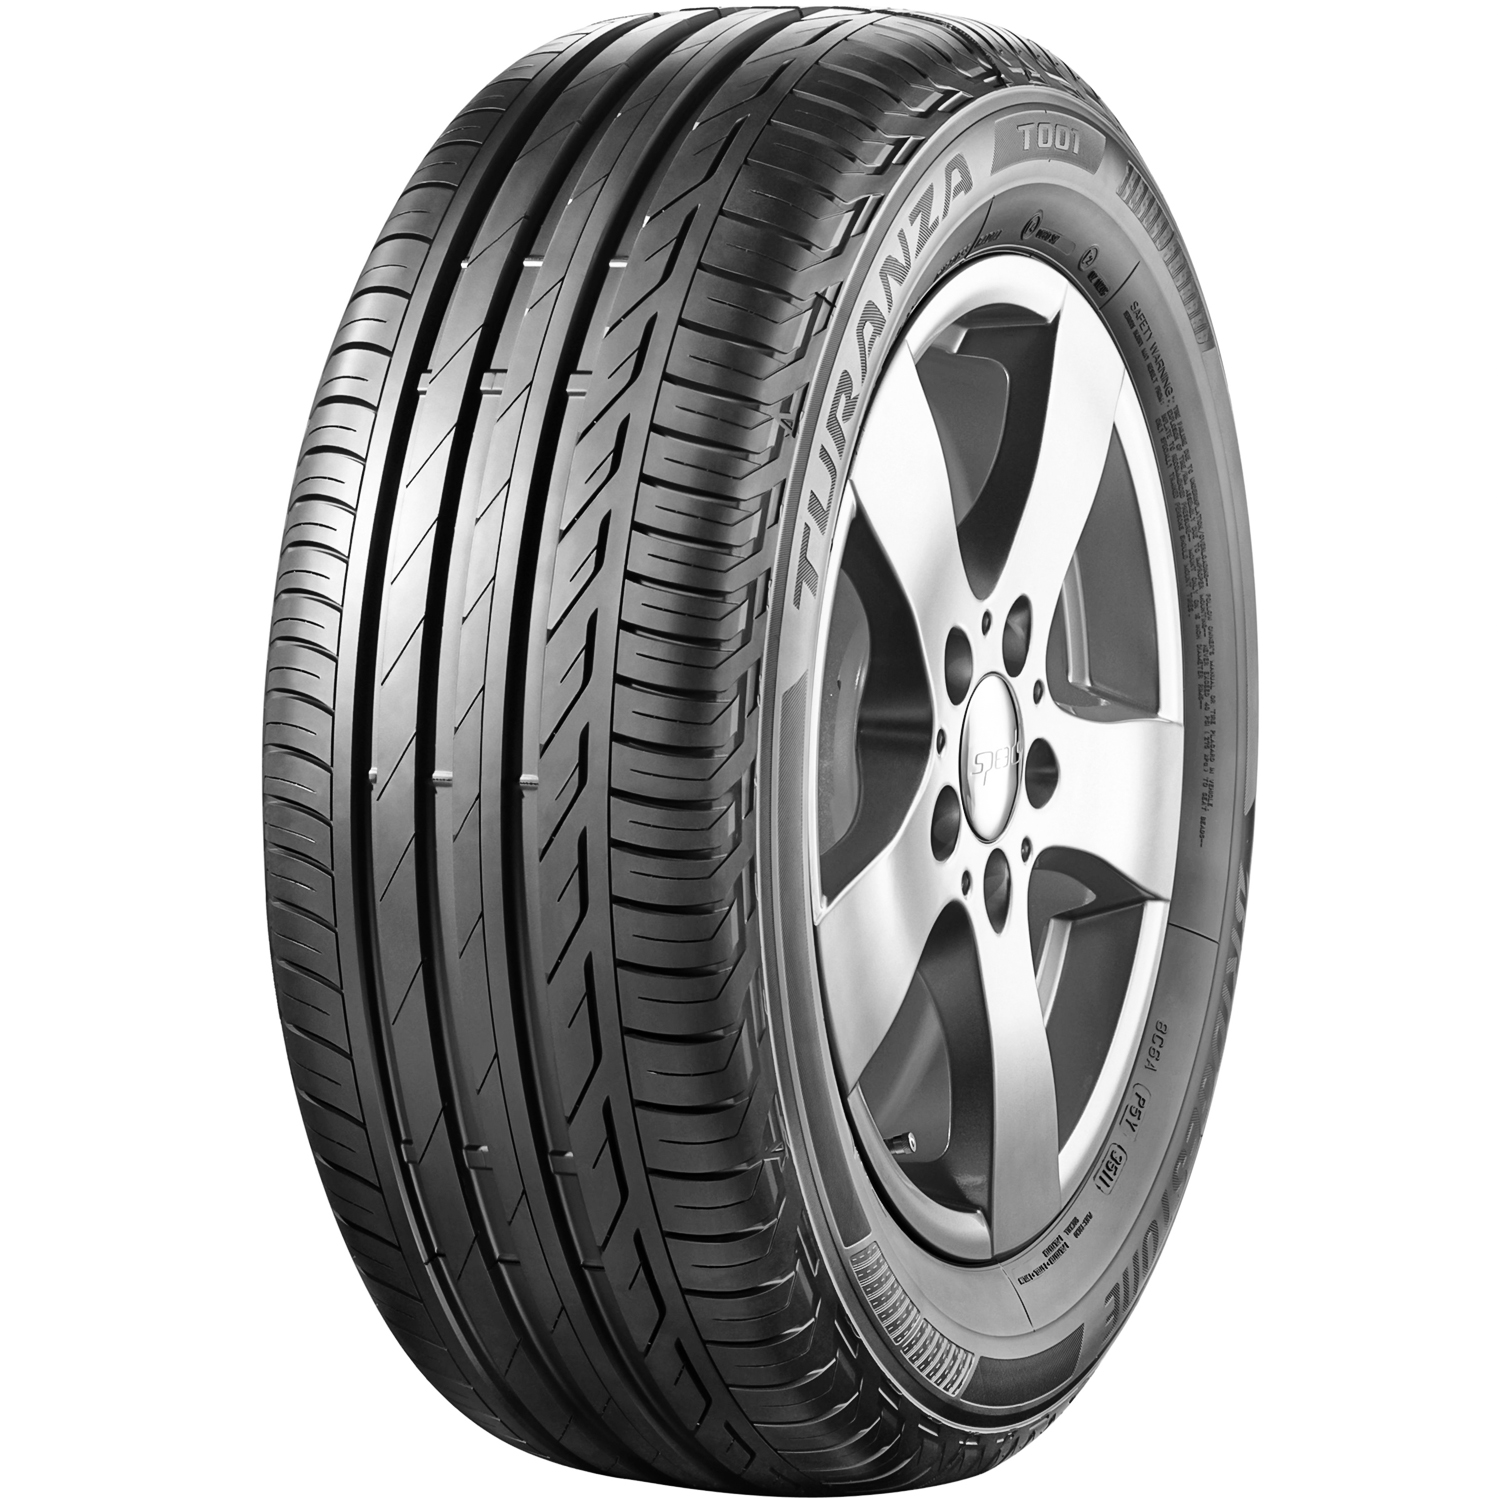 Bridgestone Tire Bridgestone Turanza T001 205/65R16 95W High Performance